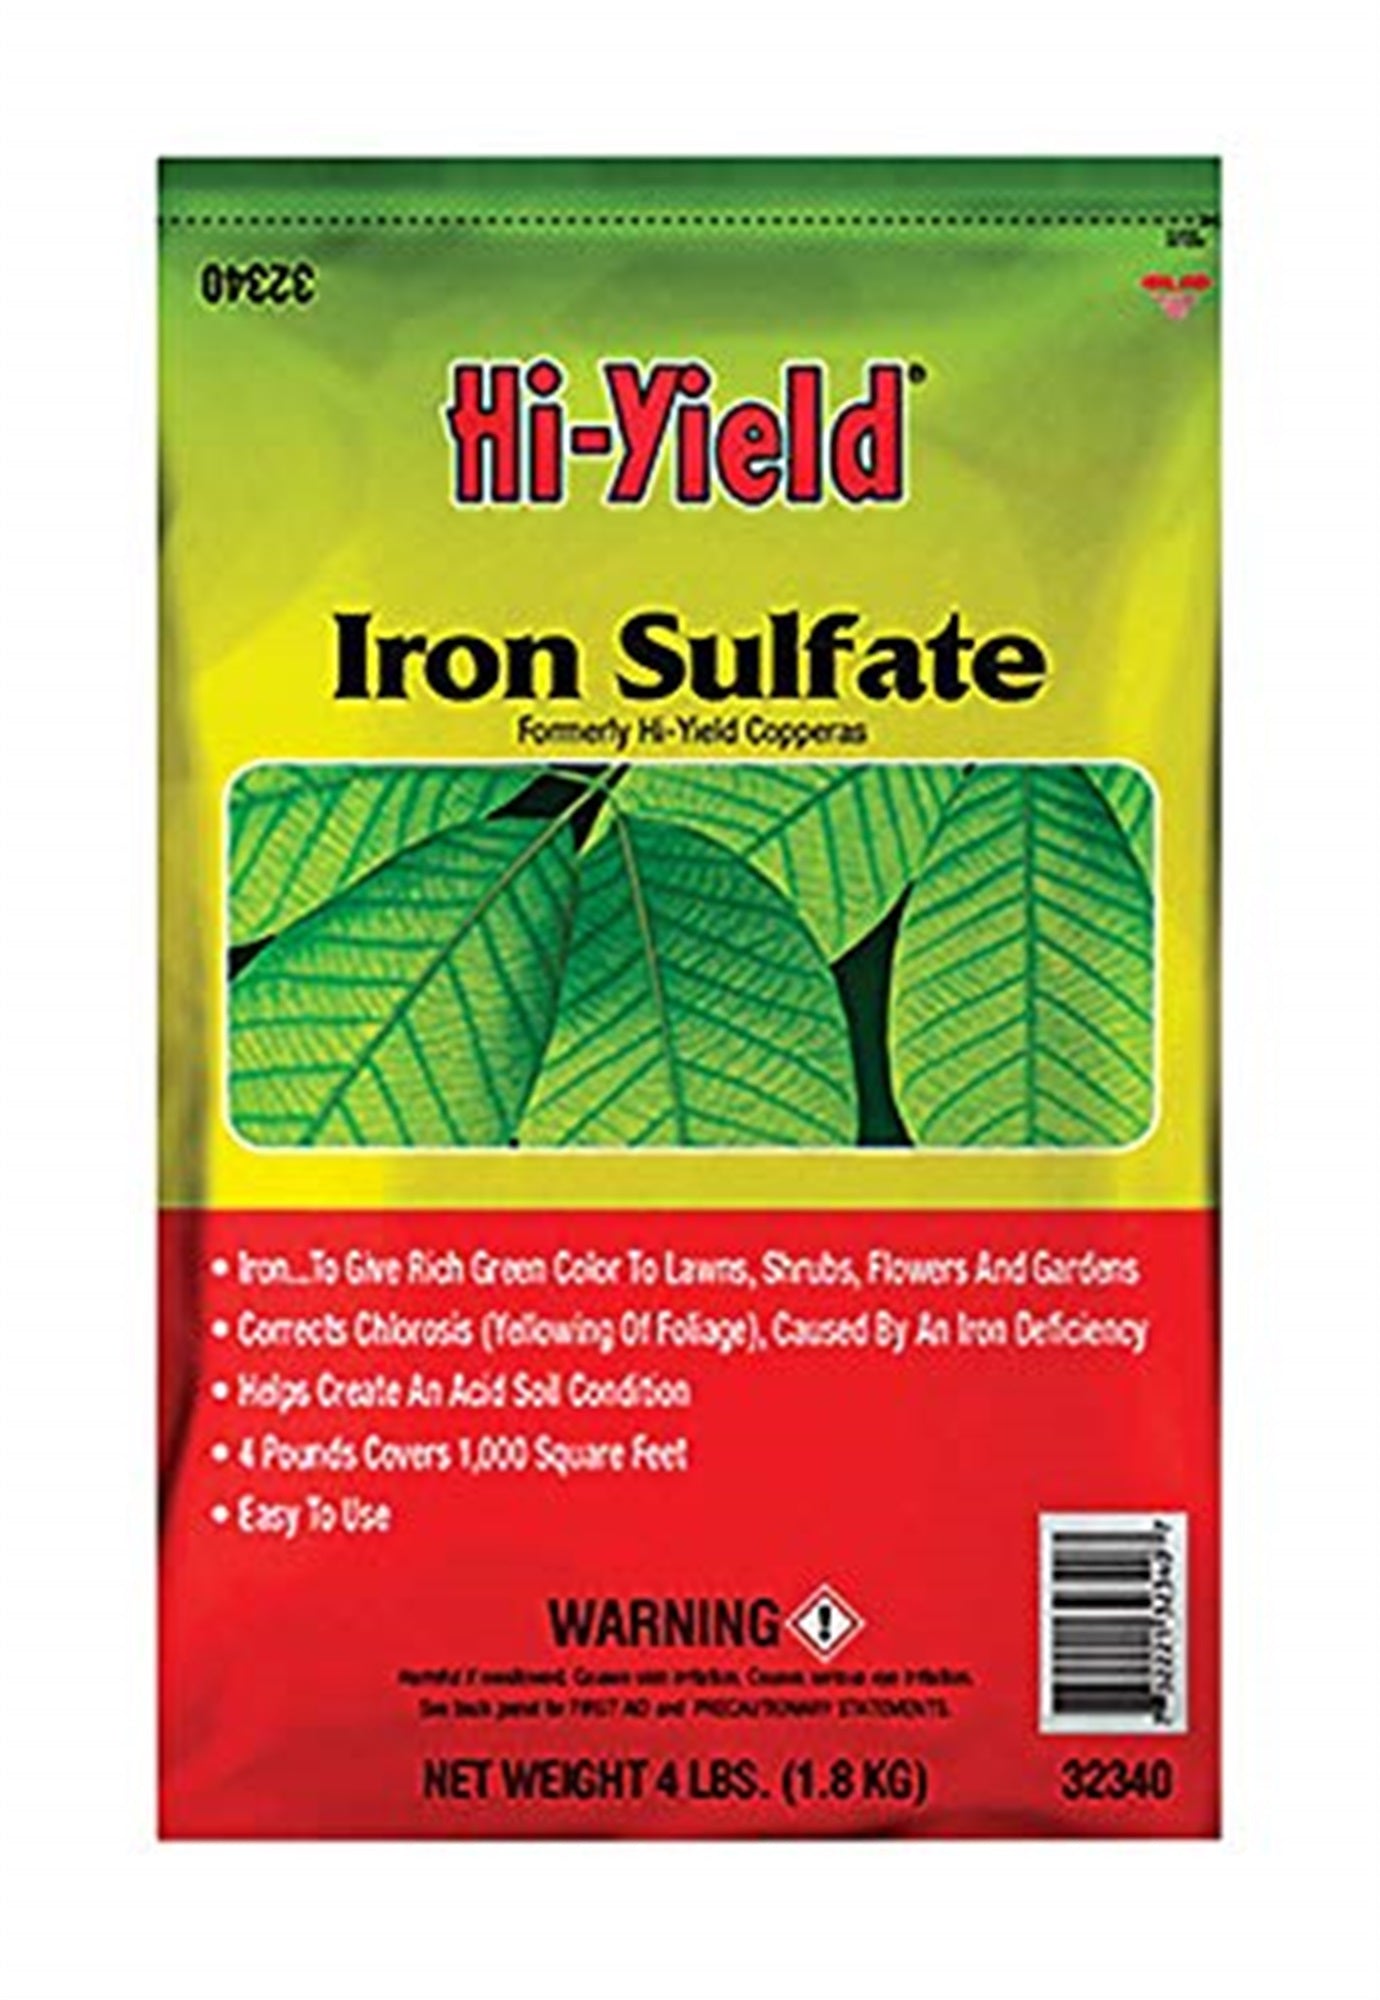 VPG Hi-Yield Iron Sulfate, 4 lb bag